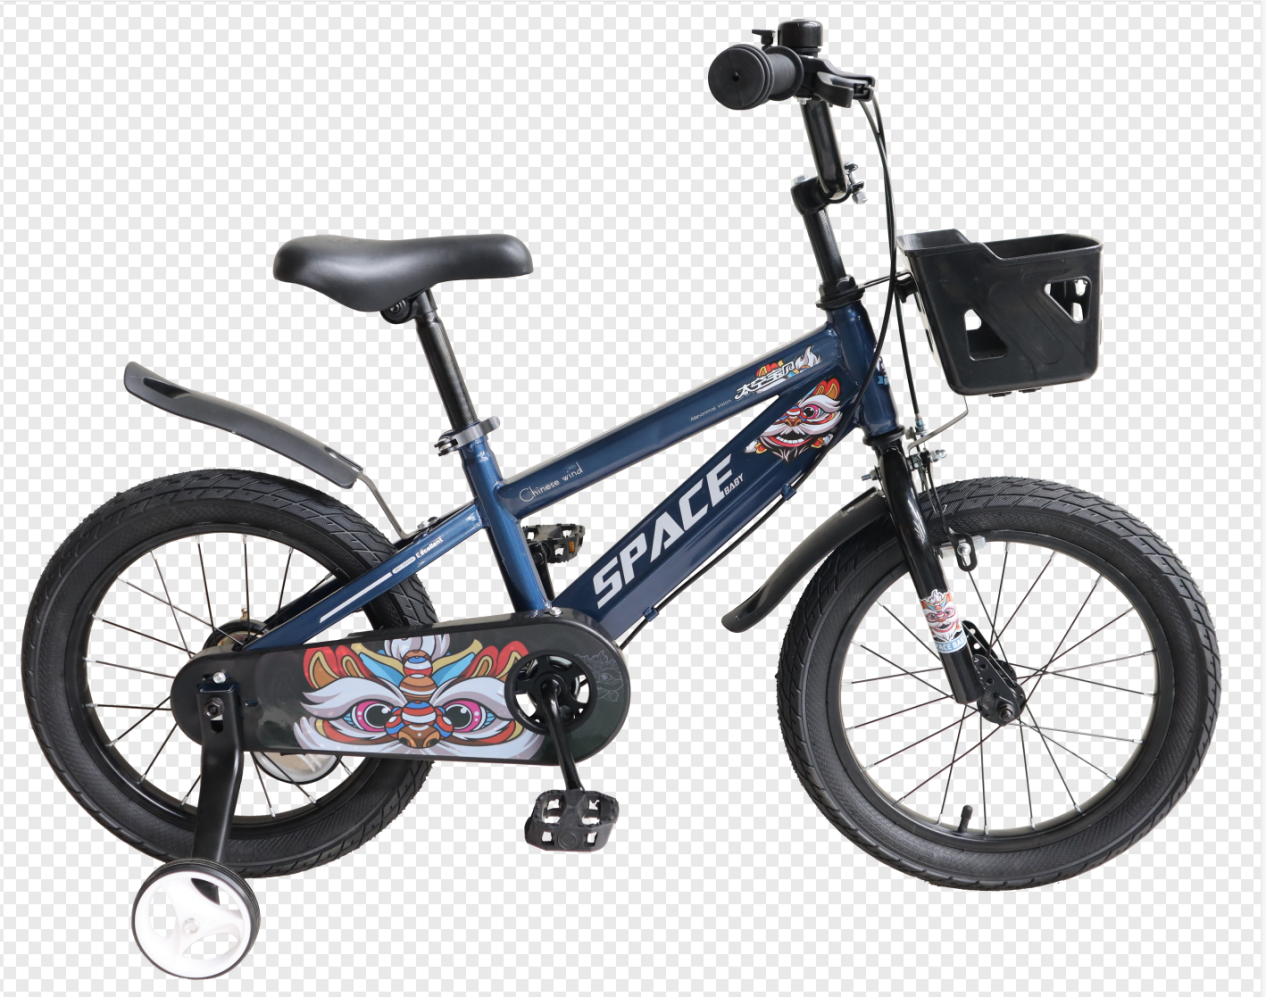 El mejor precio de 5 a 10 años, la bicicleta de niños viejos